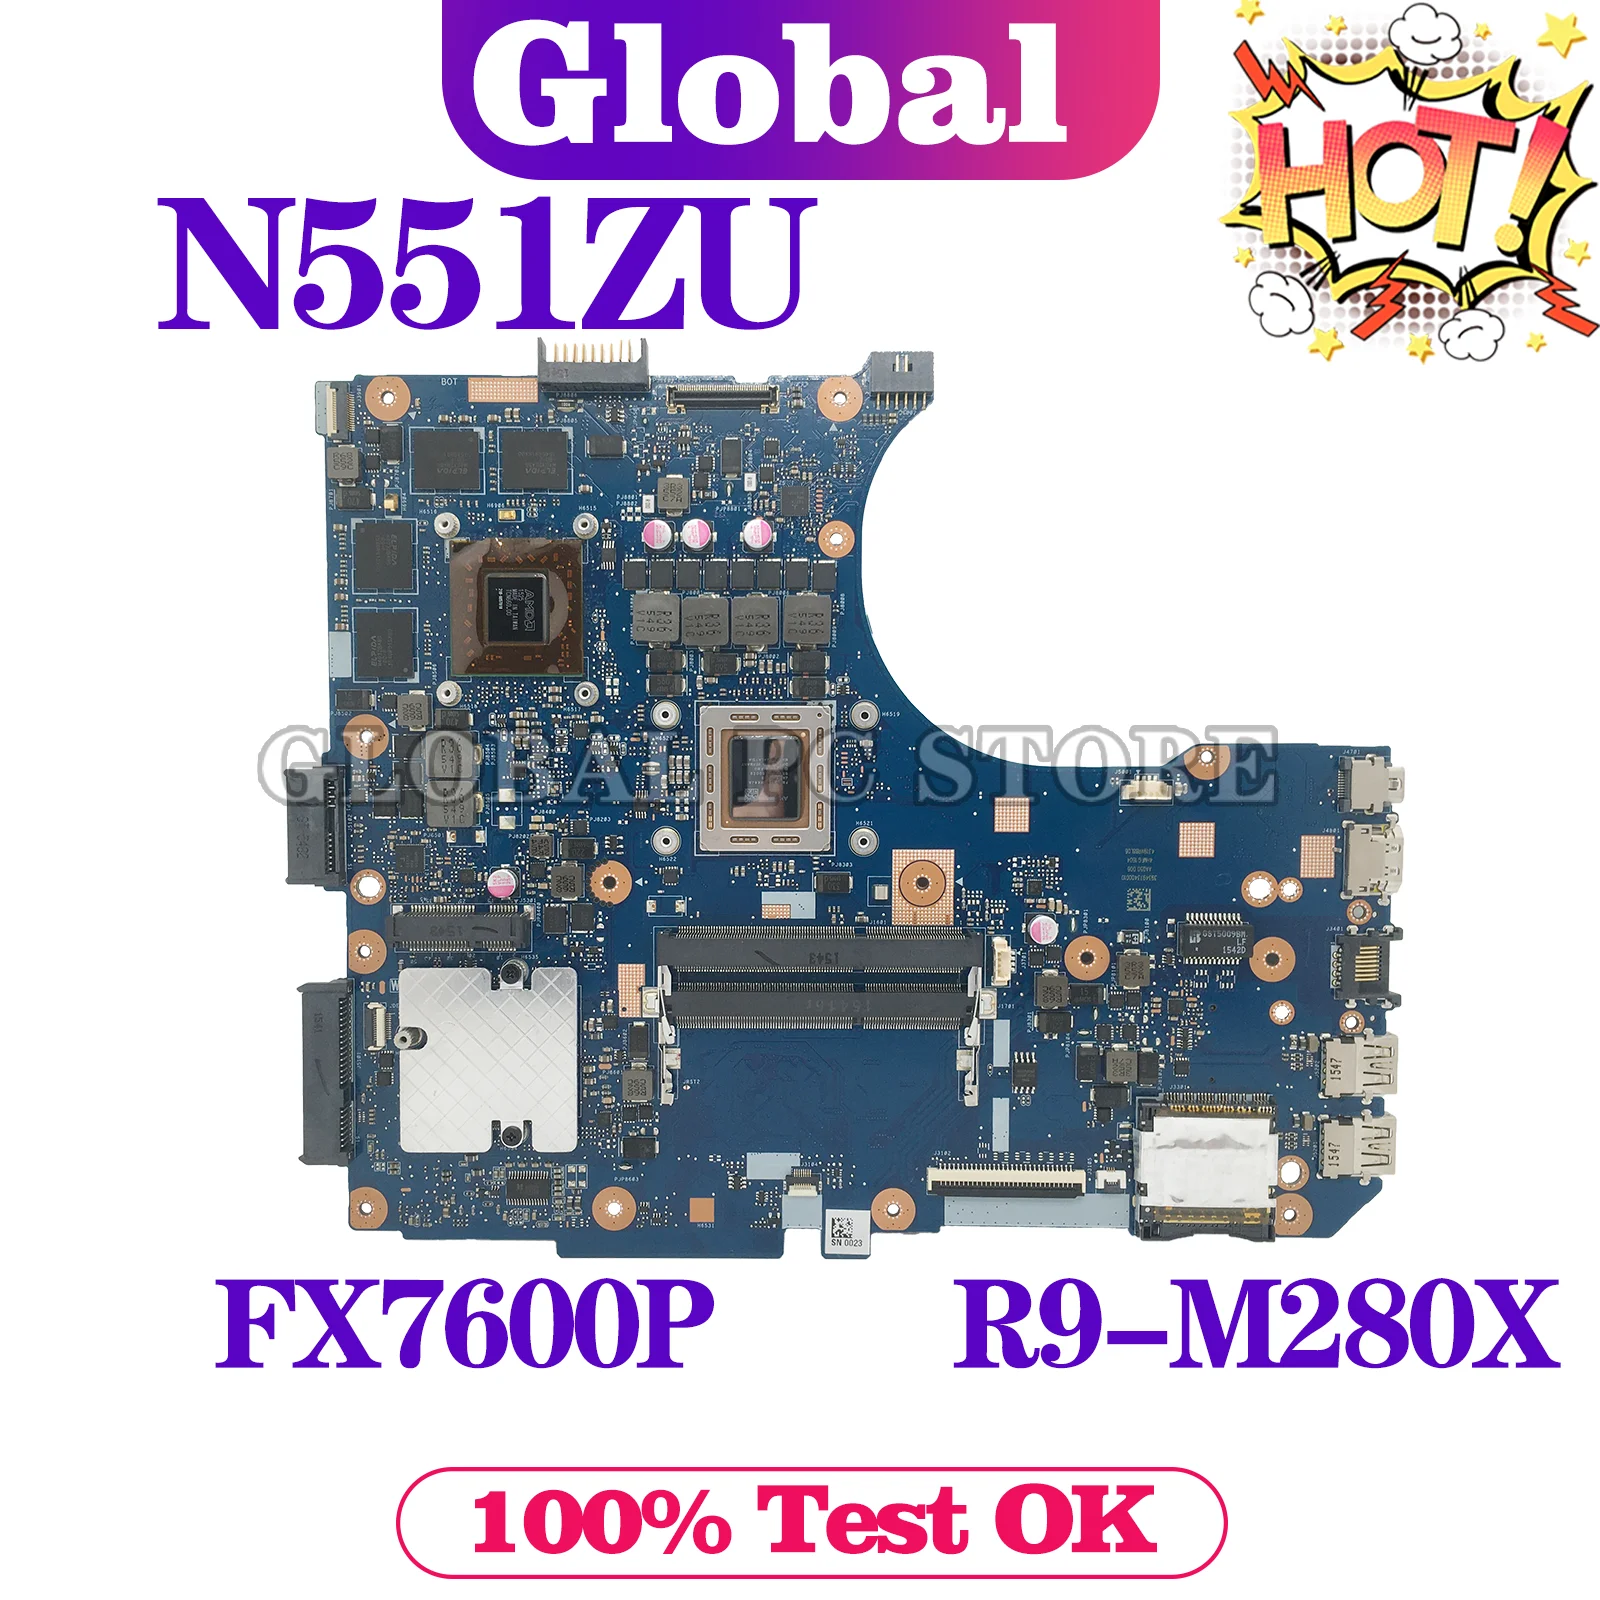 KEFU N551ZU základní Deska Pro ASUS N551ZU N551Z Notebooku, základní Deska S CPU: FX7600P GPU: R9-M280X Hlavní Desce Test na tlačítko OK